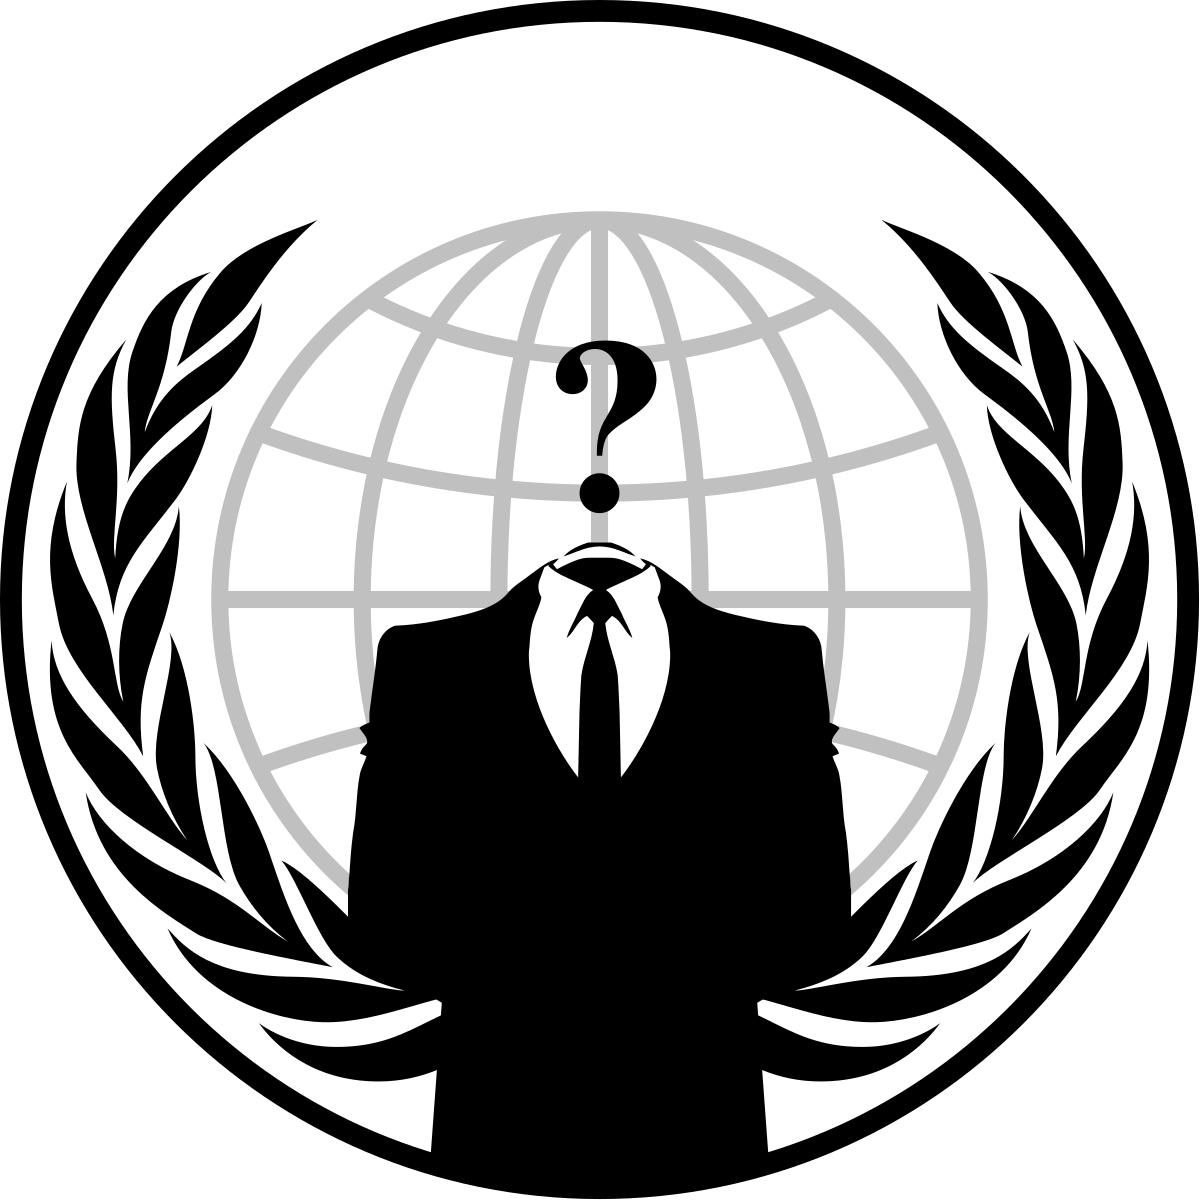 anonymous emblem